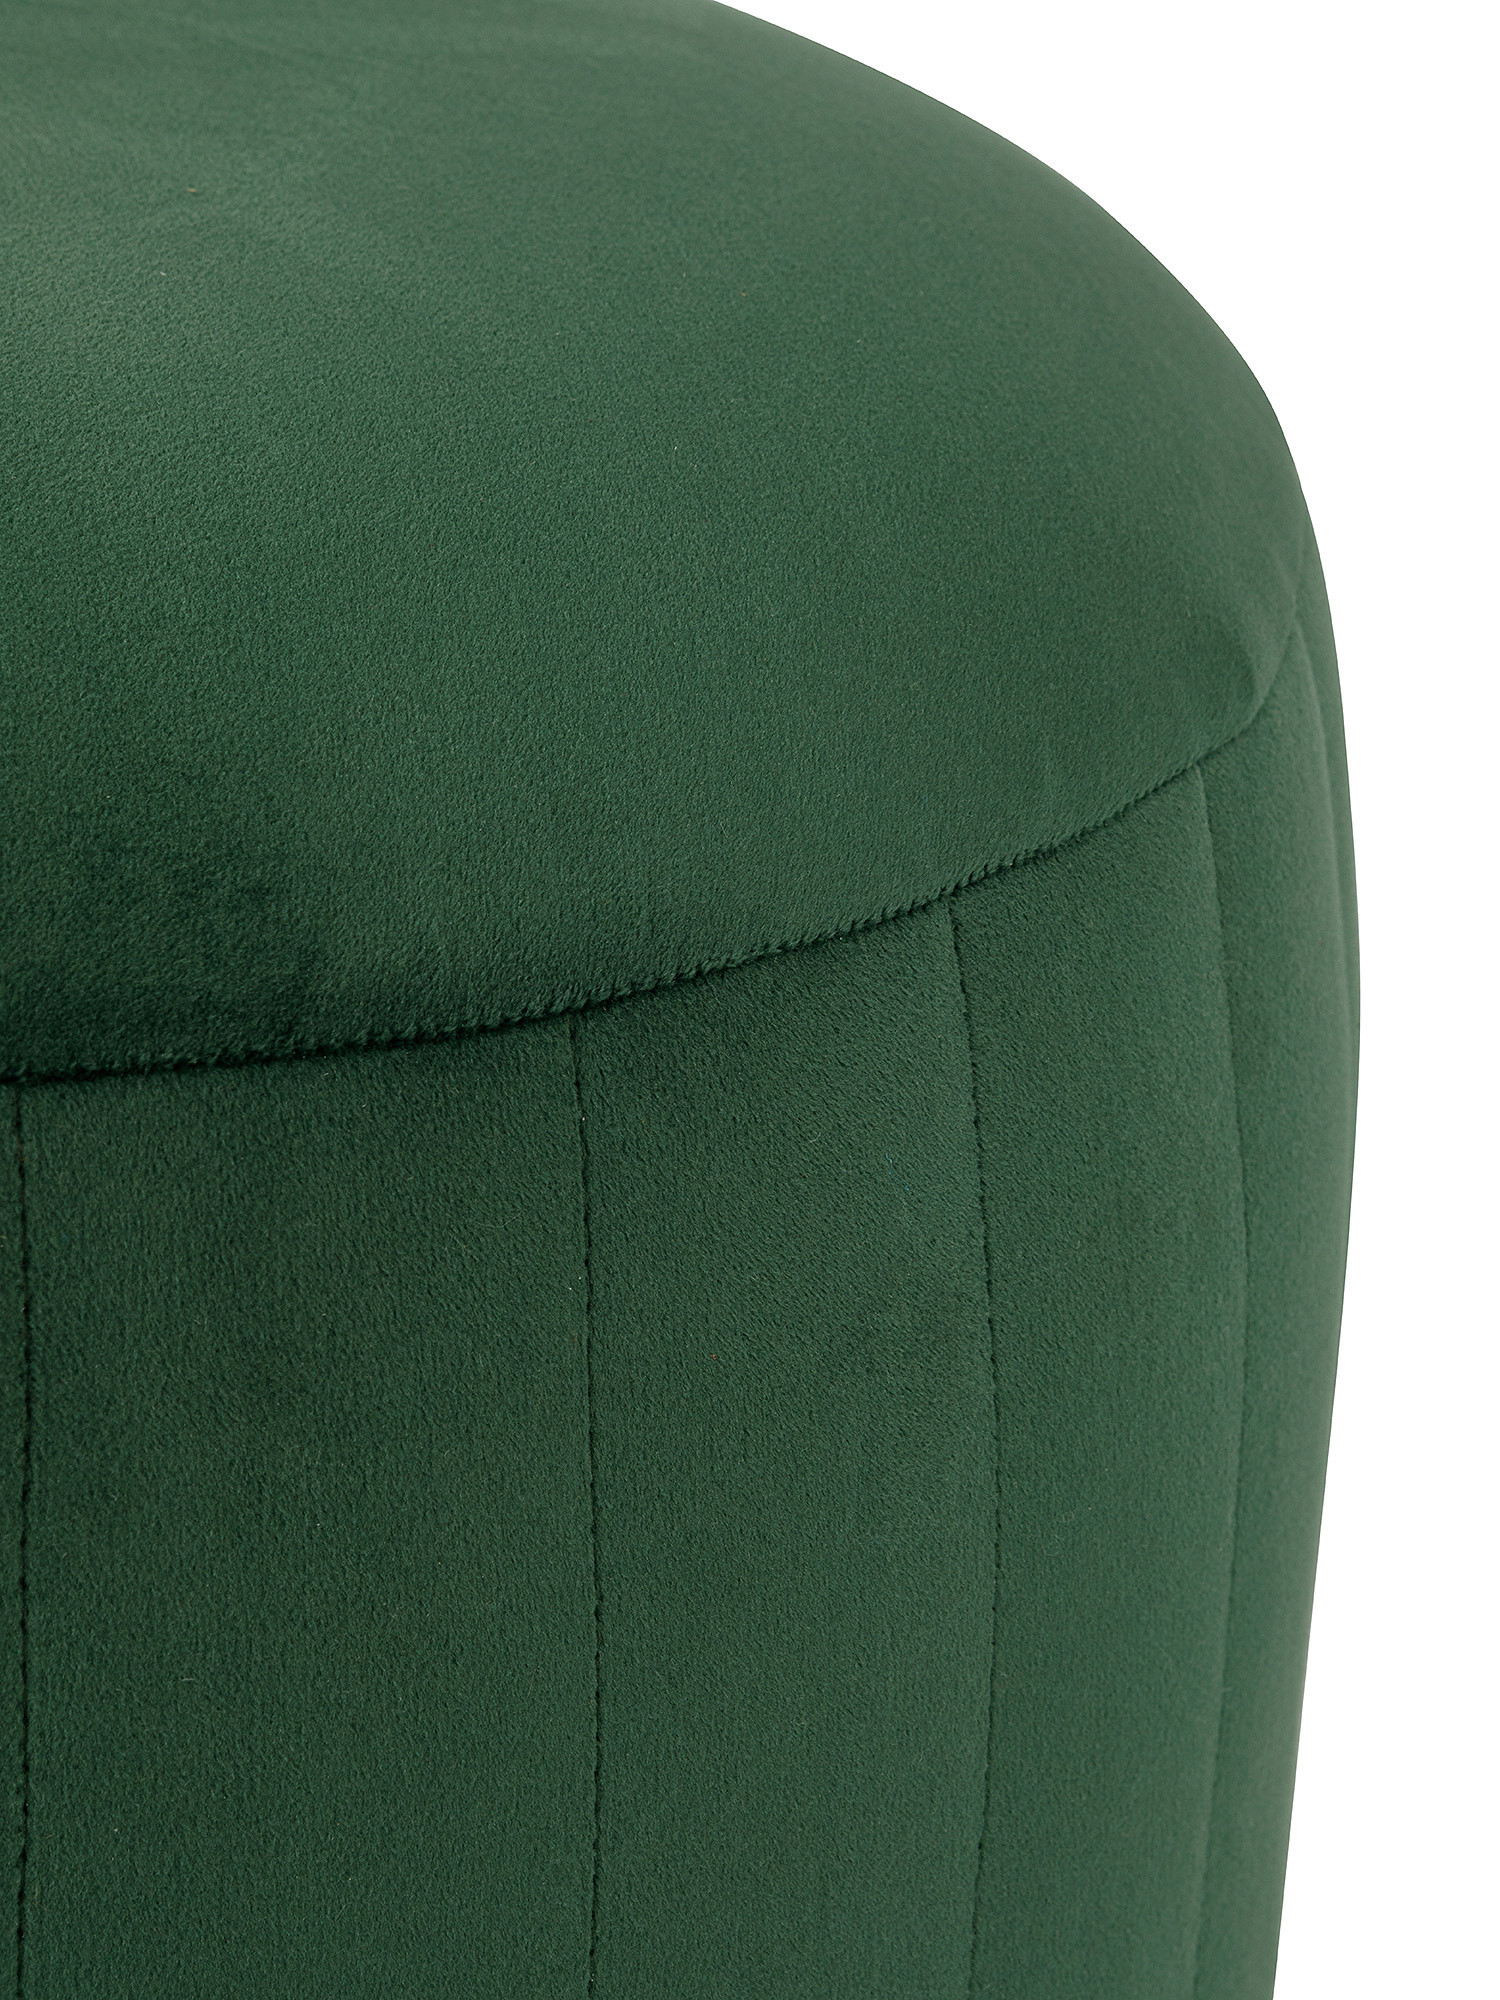 Solid color silk-effect velvet pouf, Dark Green, large image number 1